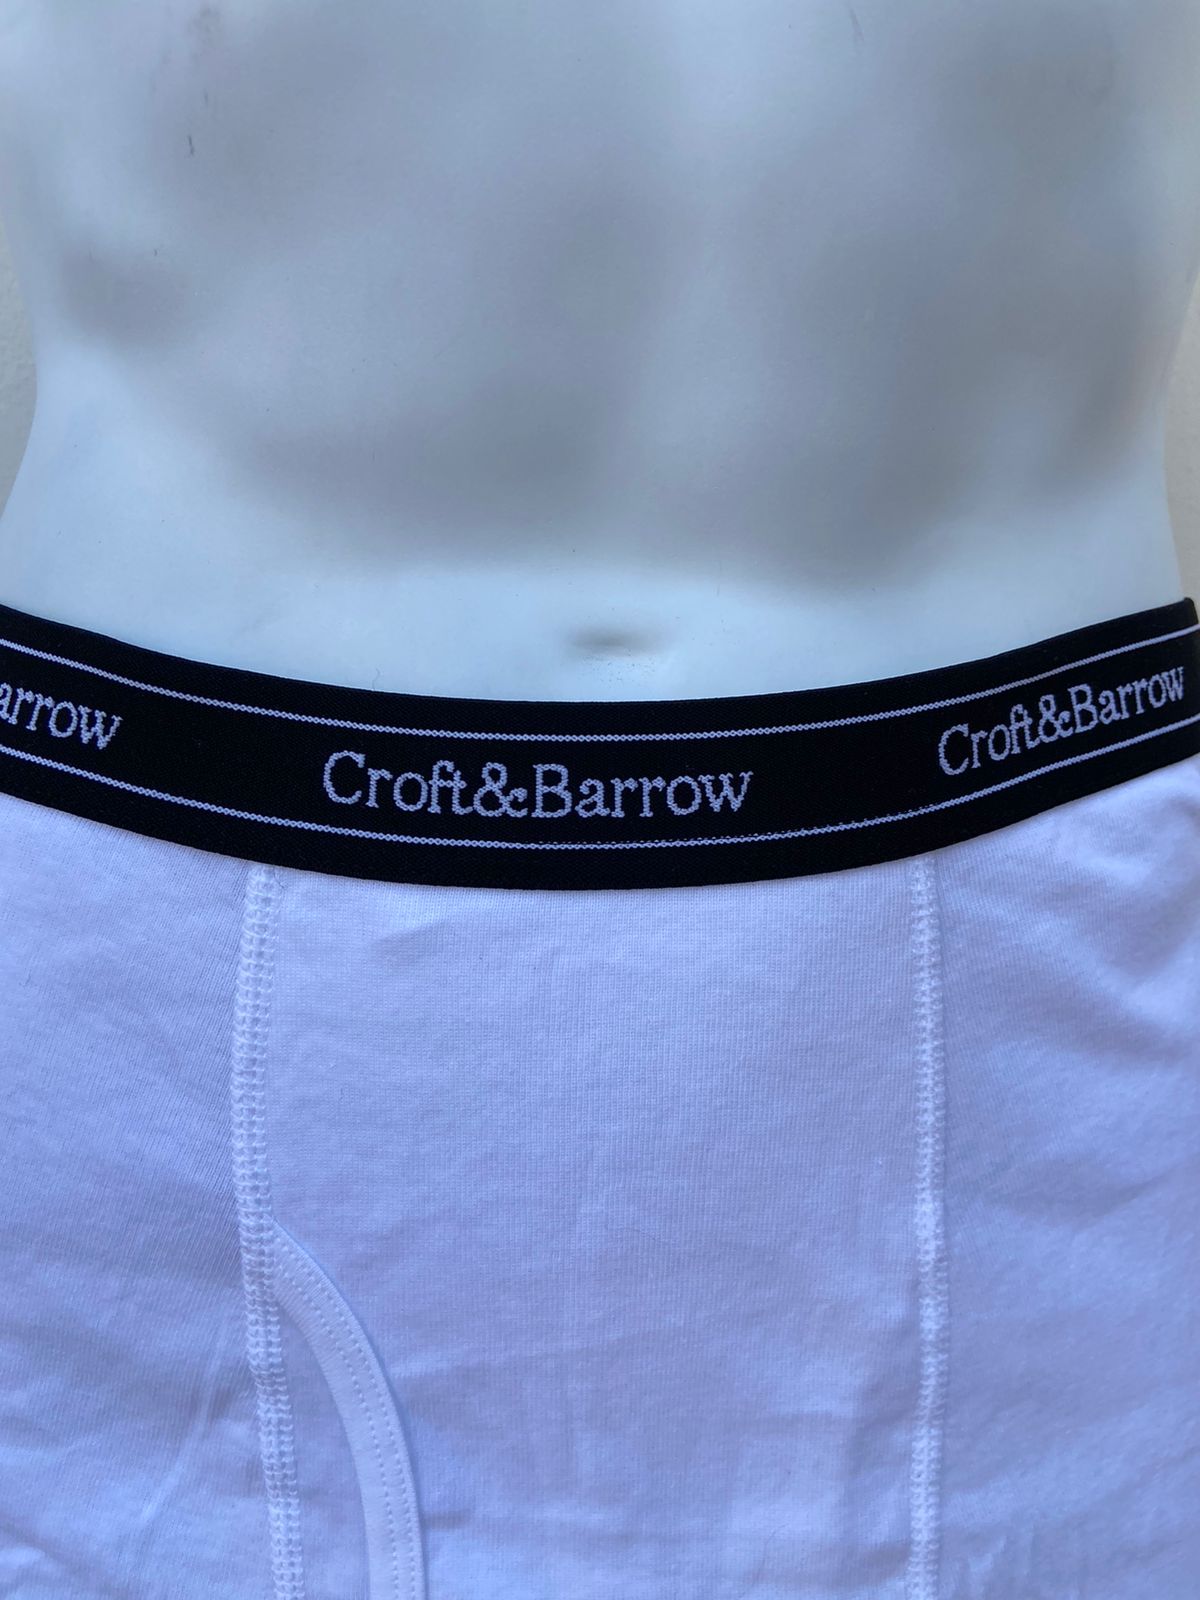 Boxers Croft & Barrow original, blanco con banda elástica negra y letras Croft&Barrow en color blanco. 100% algodón